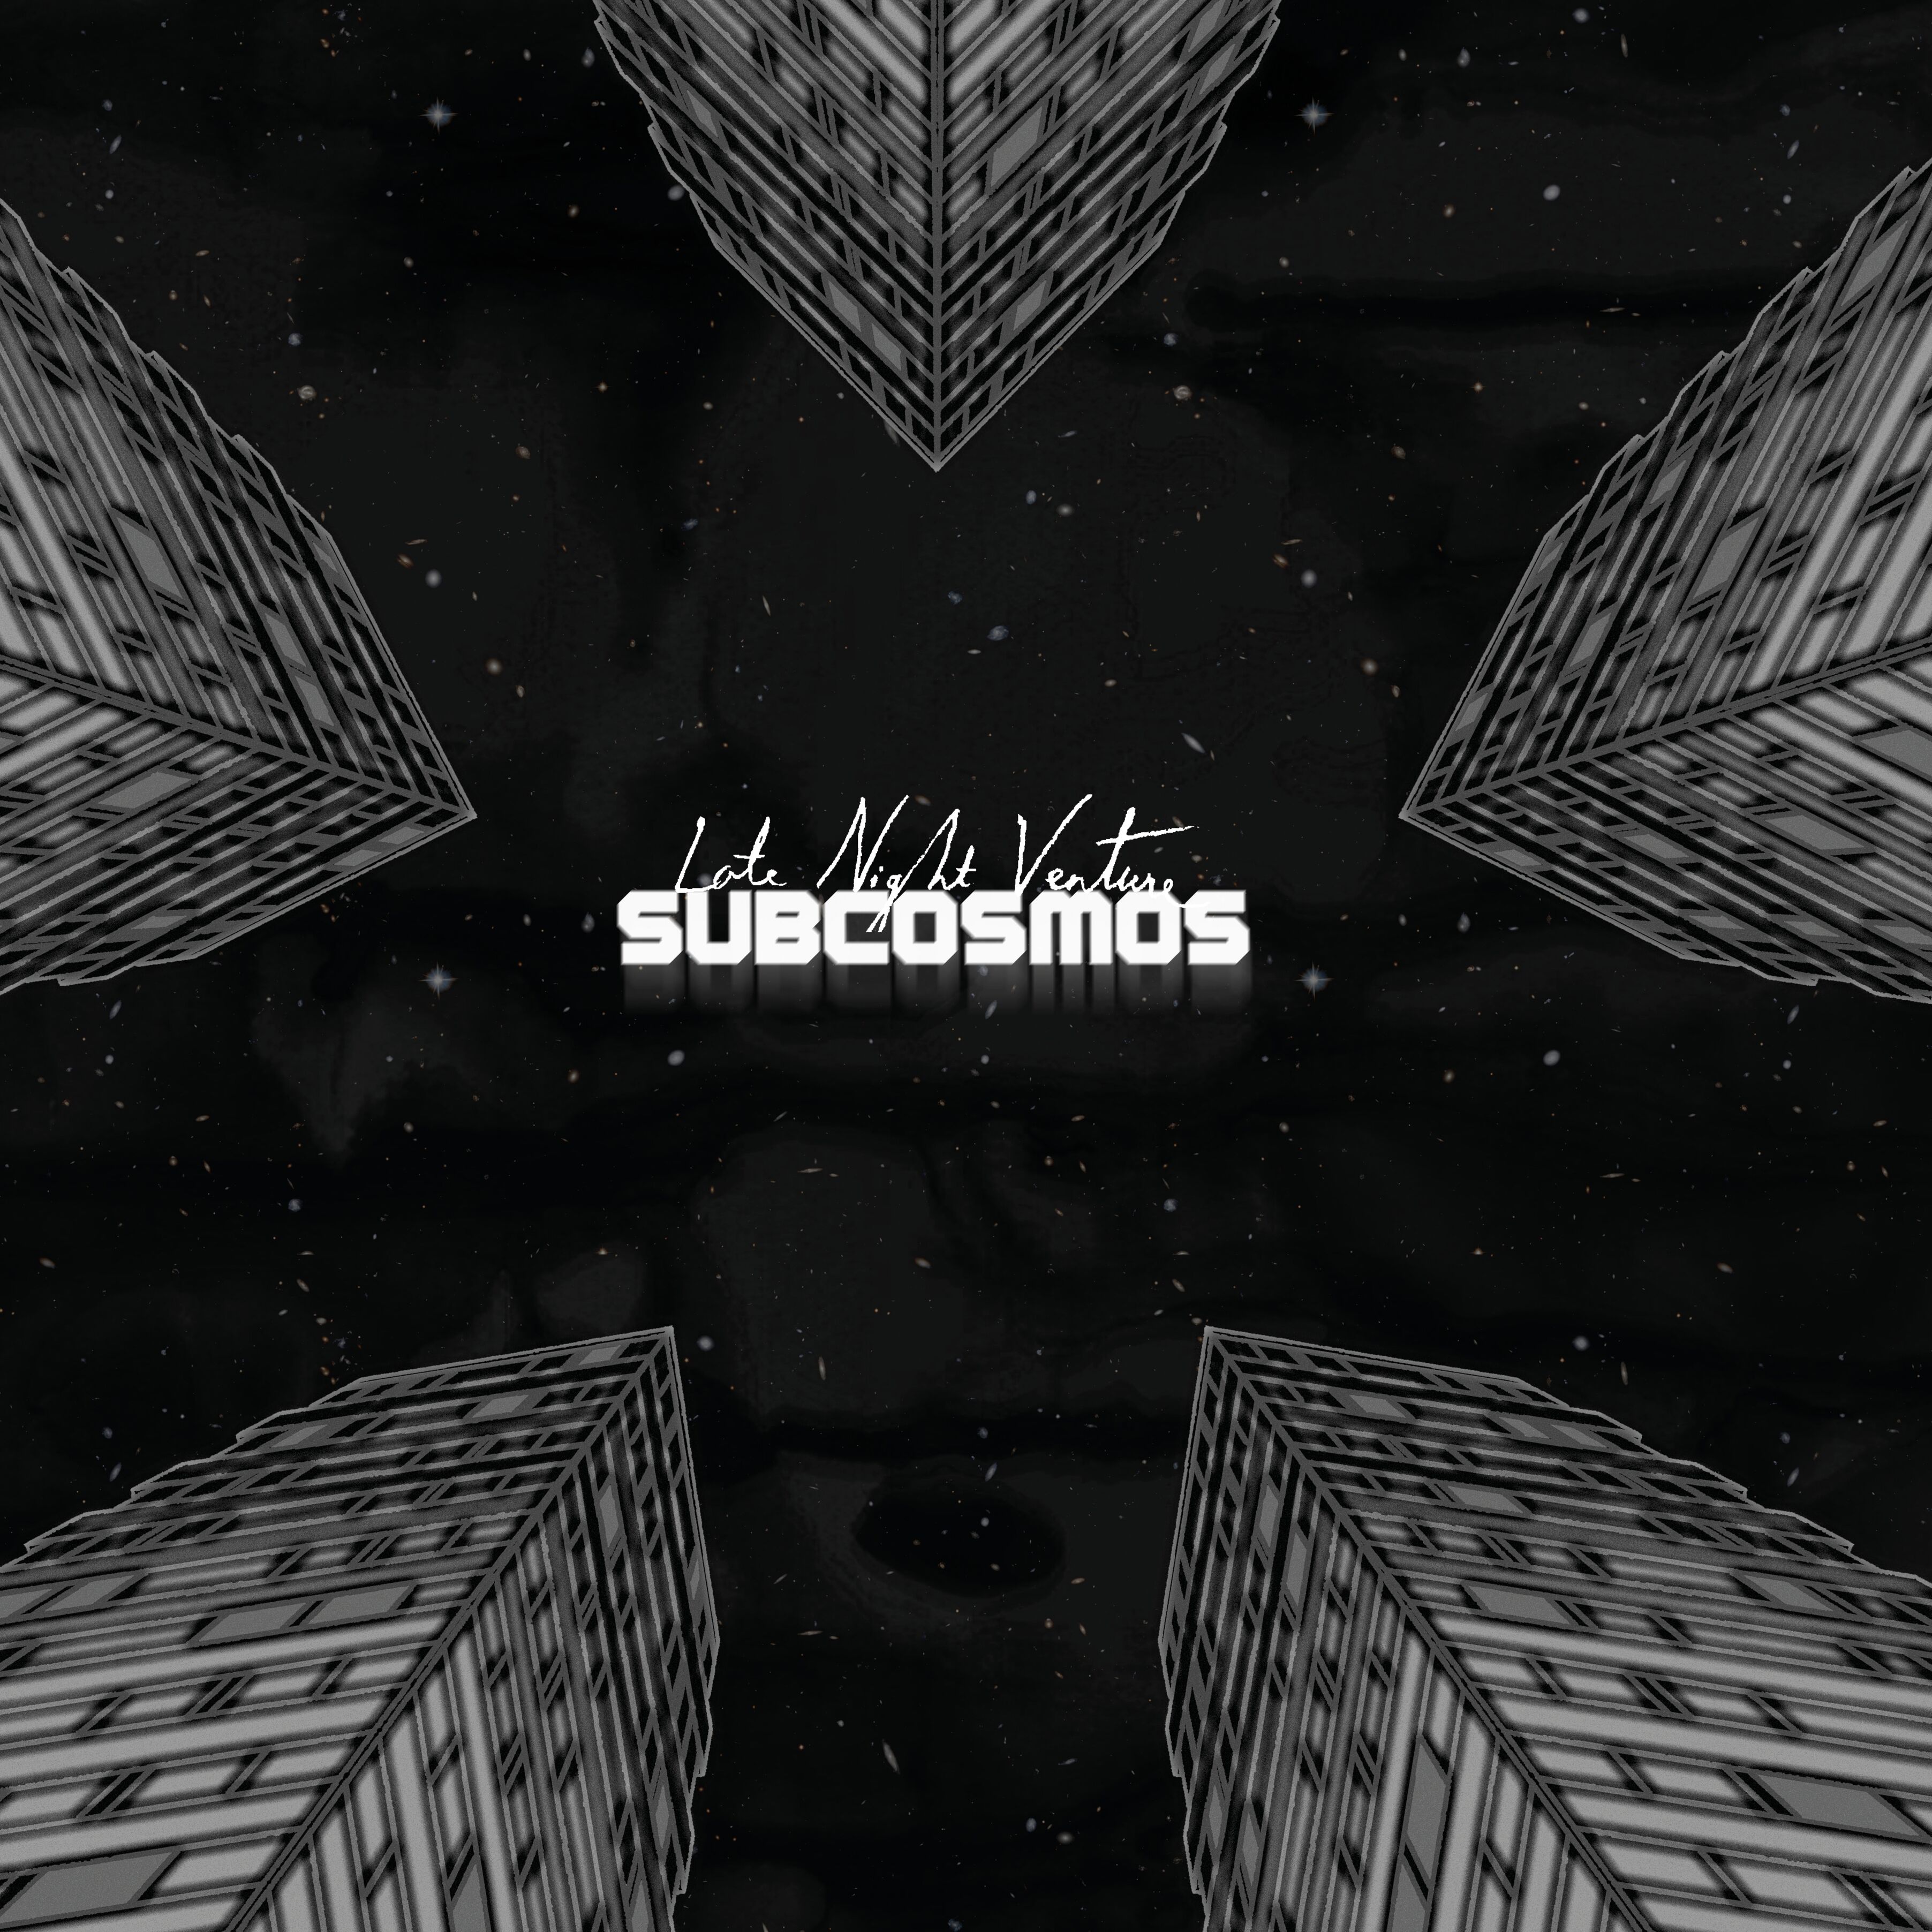 Subcosmos - Late Night Venture